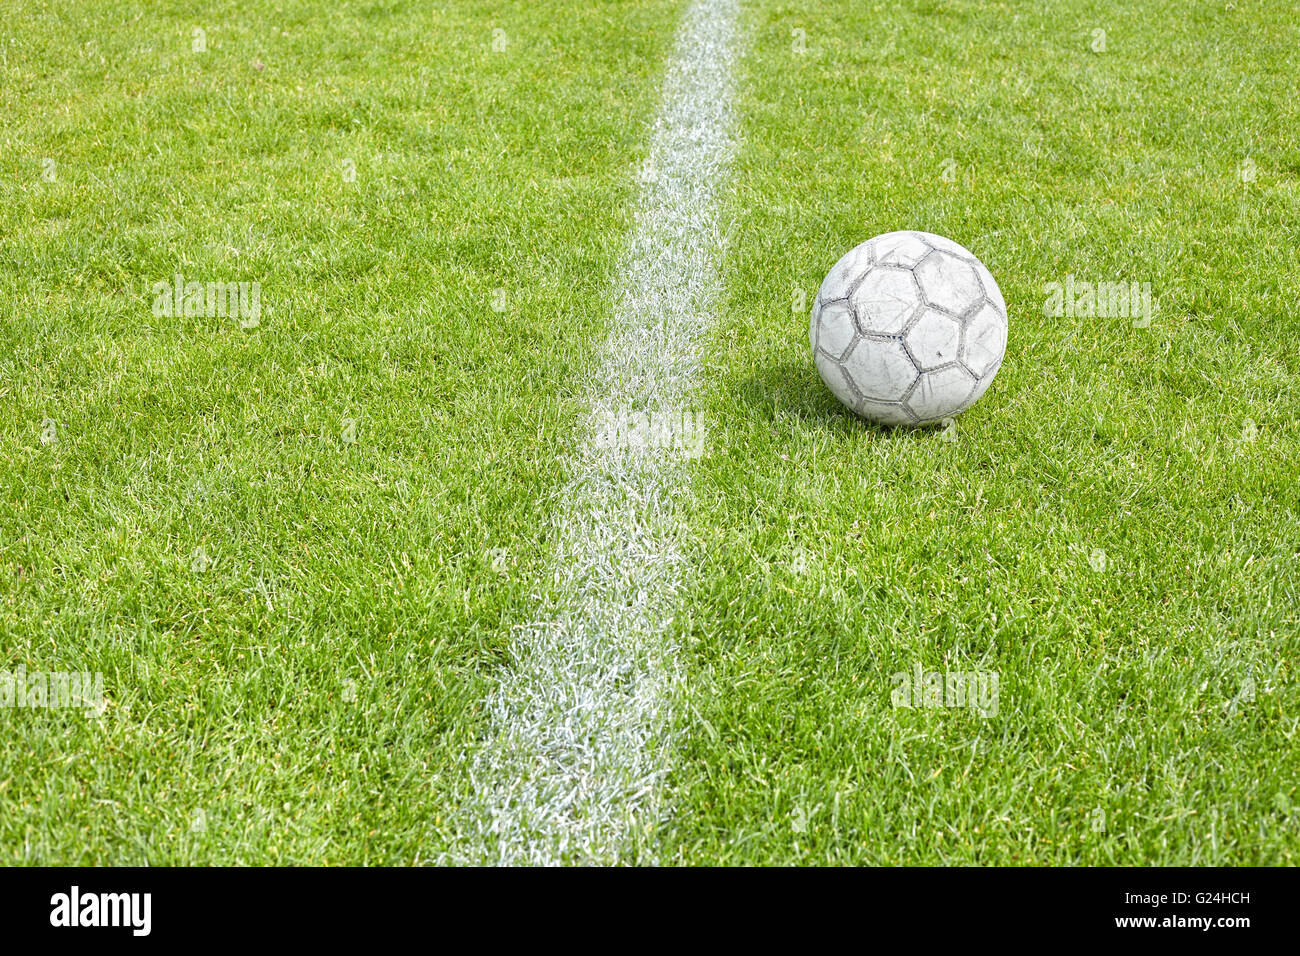 Ballon de soccer utilisé sur l'herbe par un à-côté, de l'espace pour texte, faible profondeur de champ. Banque D'Images